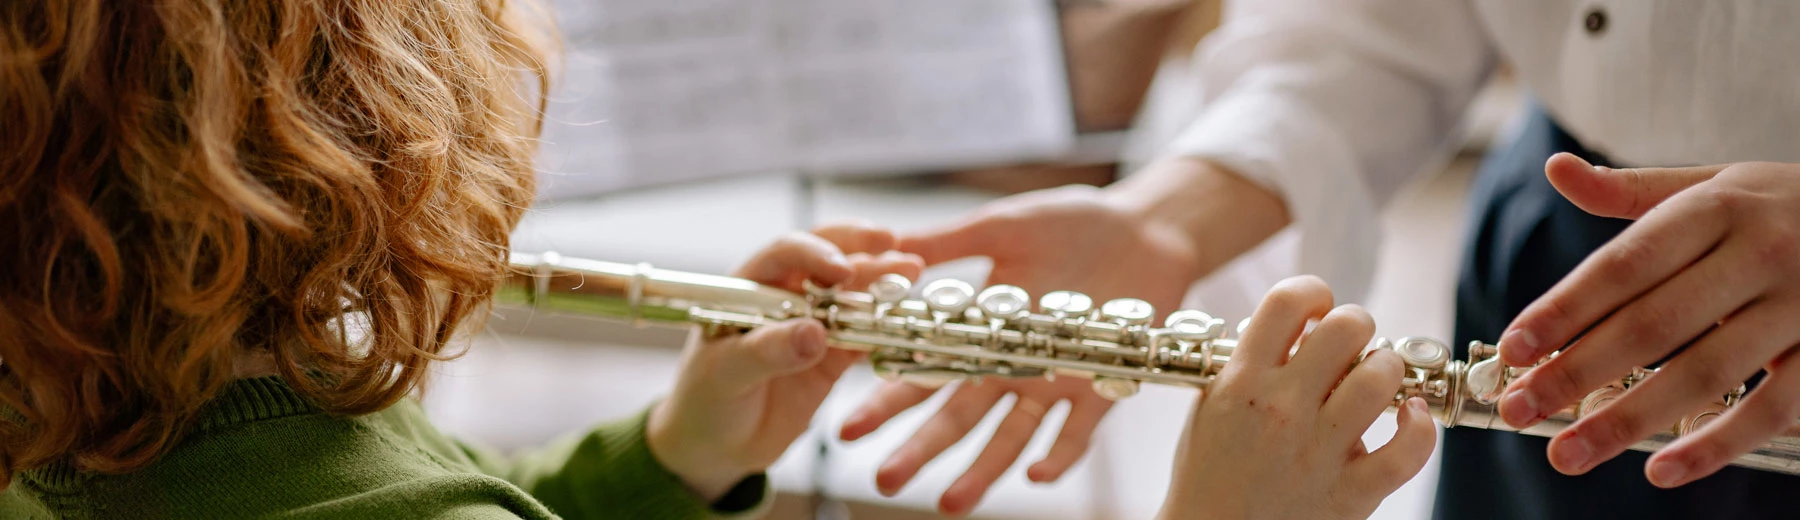 Flöte: Repertoire und Methoden Visuell